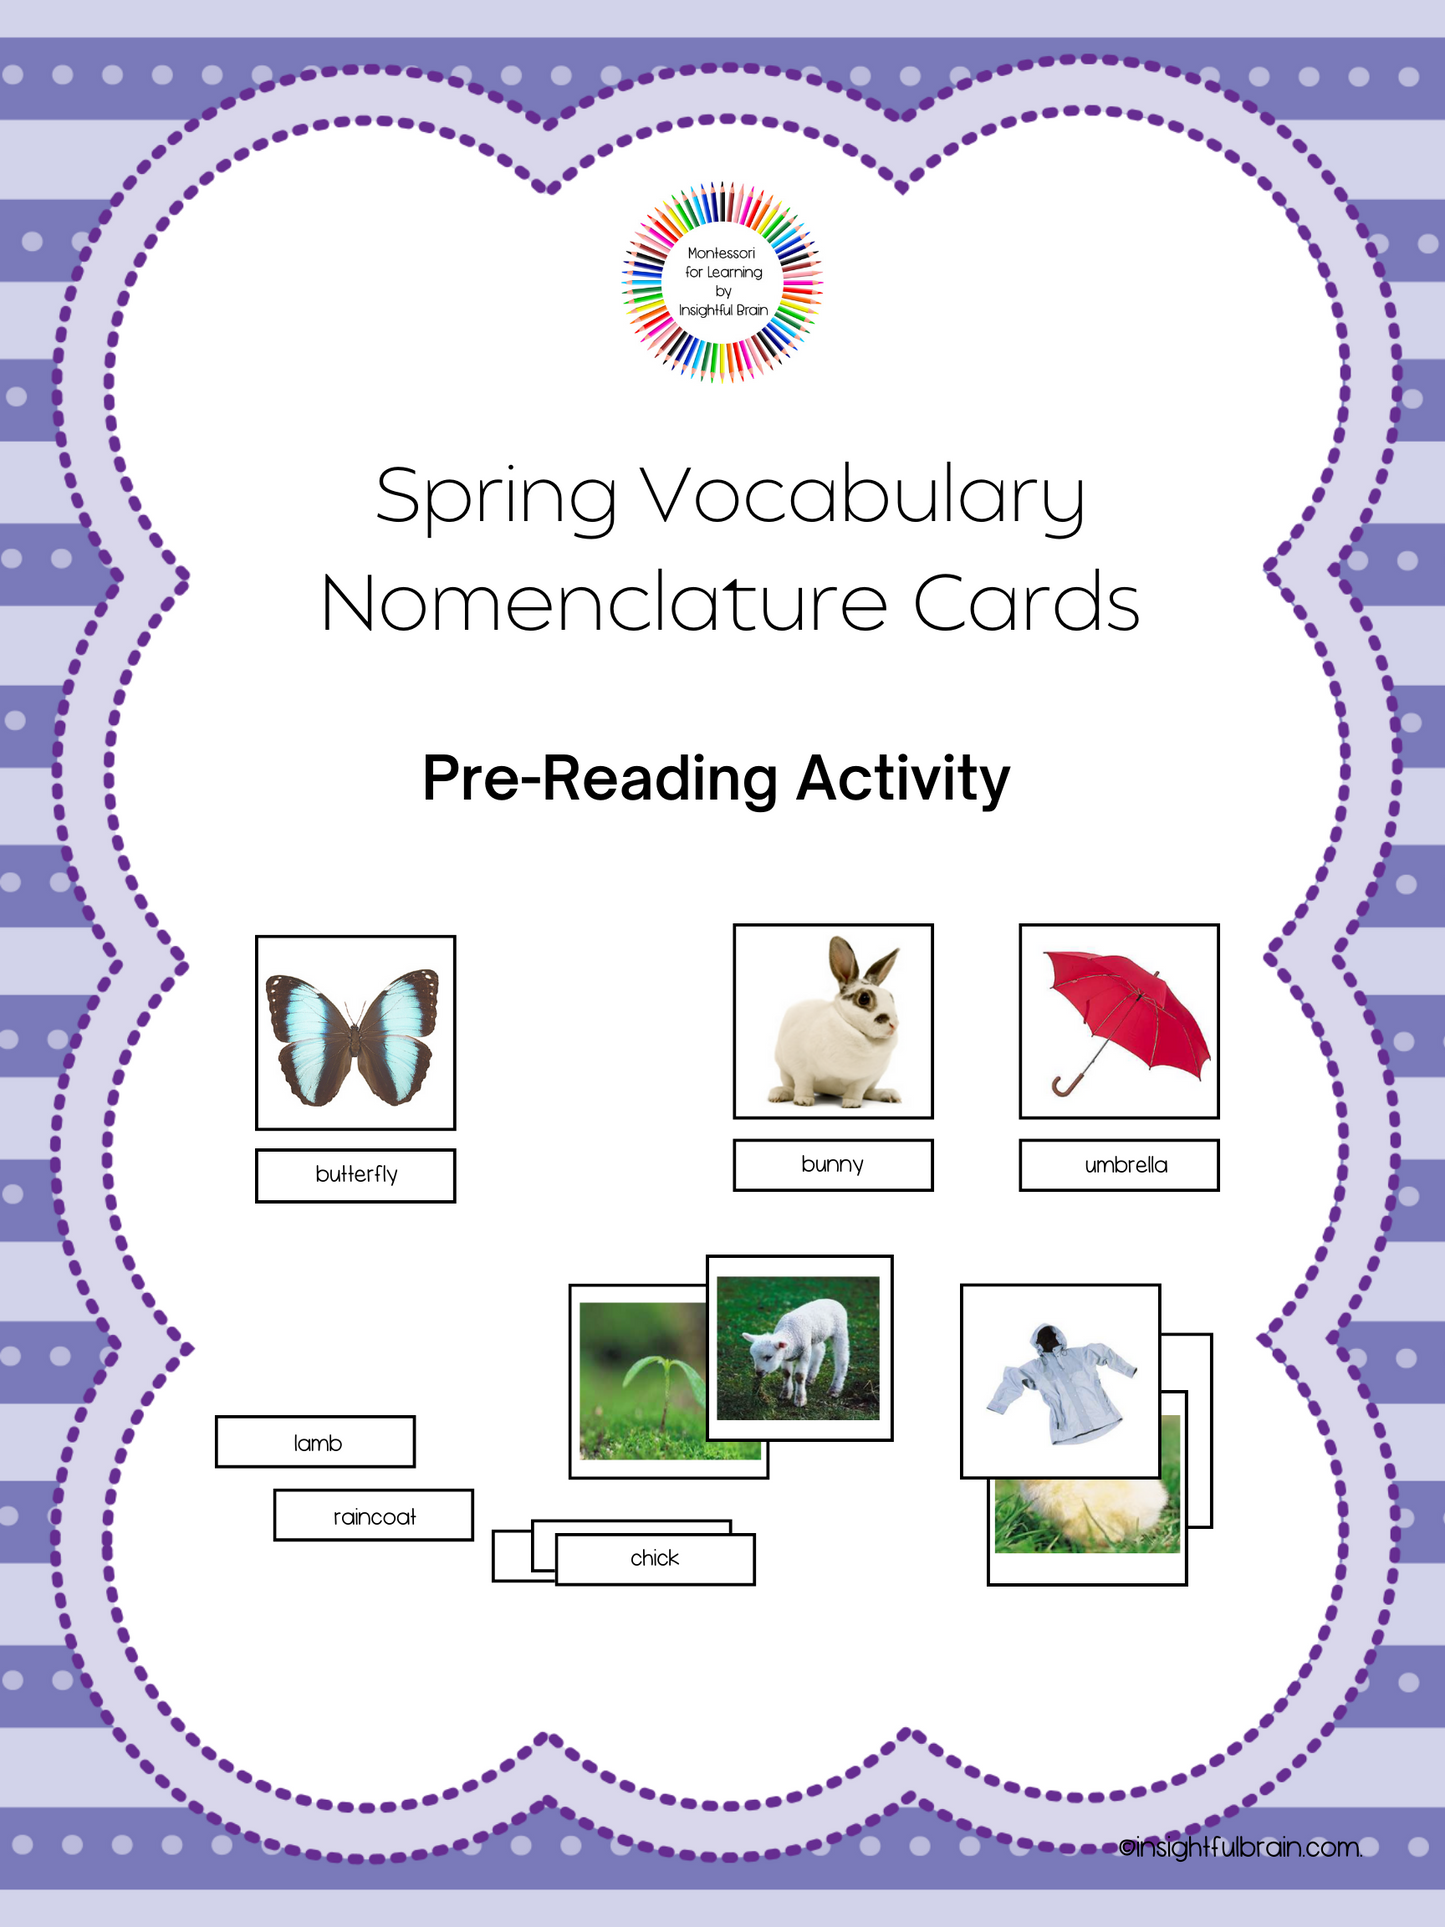 Spring Vocabulary Nomenclature Cards